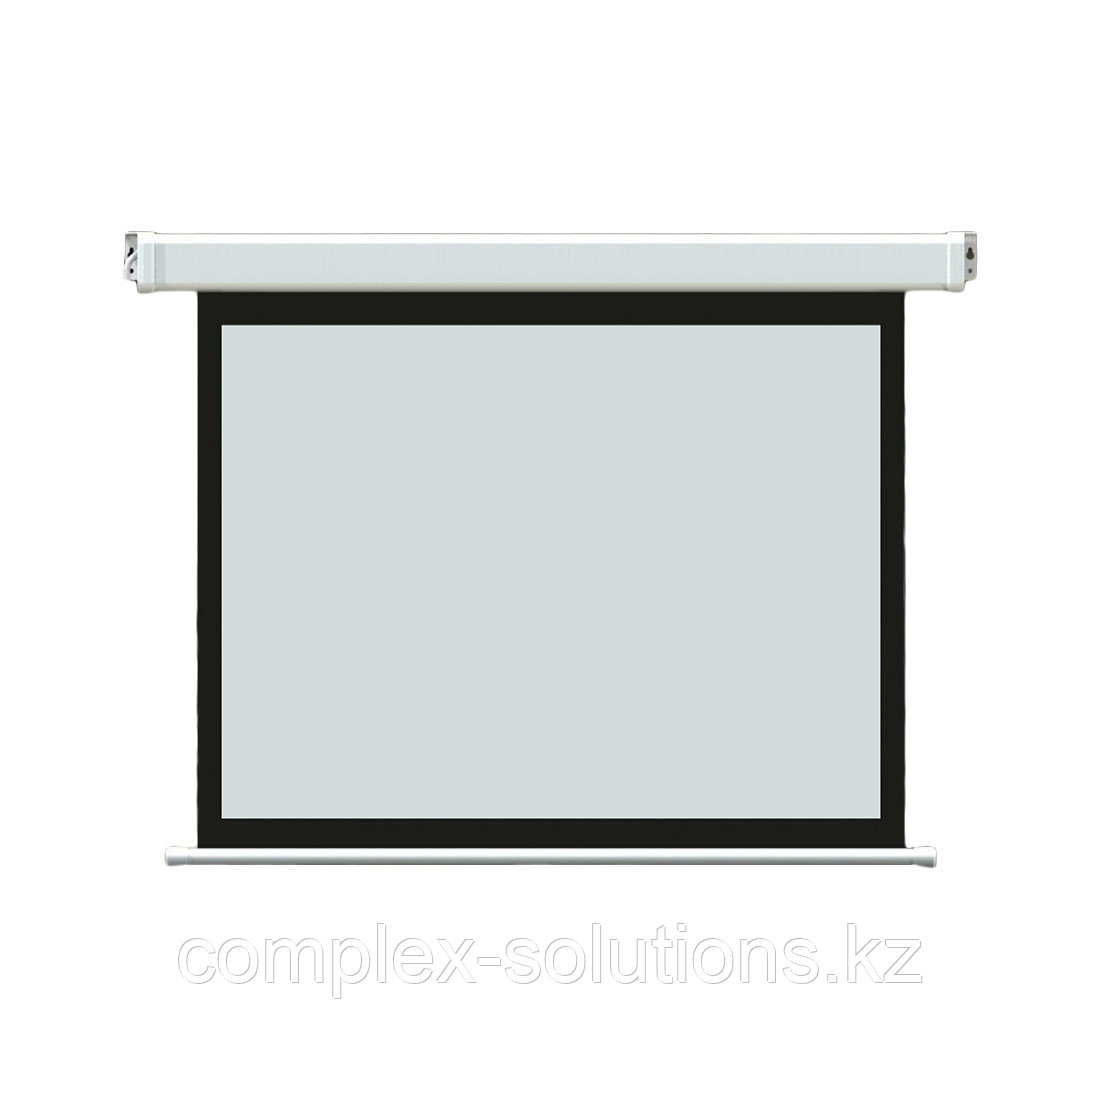 Экран моторизированный Deluxe DLS-E203х153 [80"х60"], Ø - 100", Раб. поверхность 195х145 см., 4:3